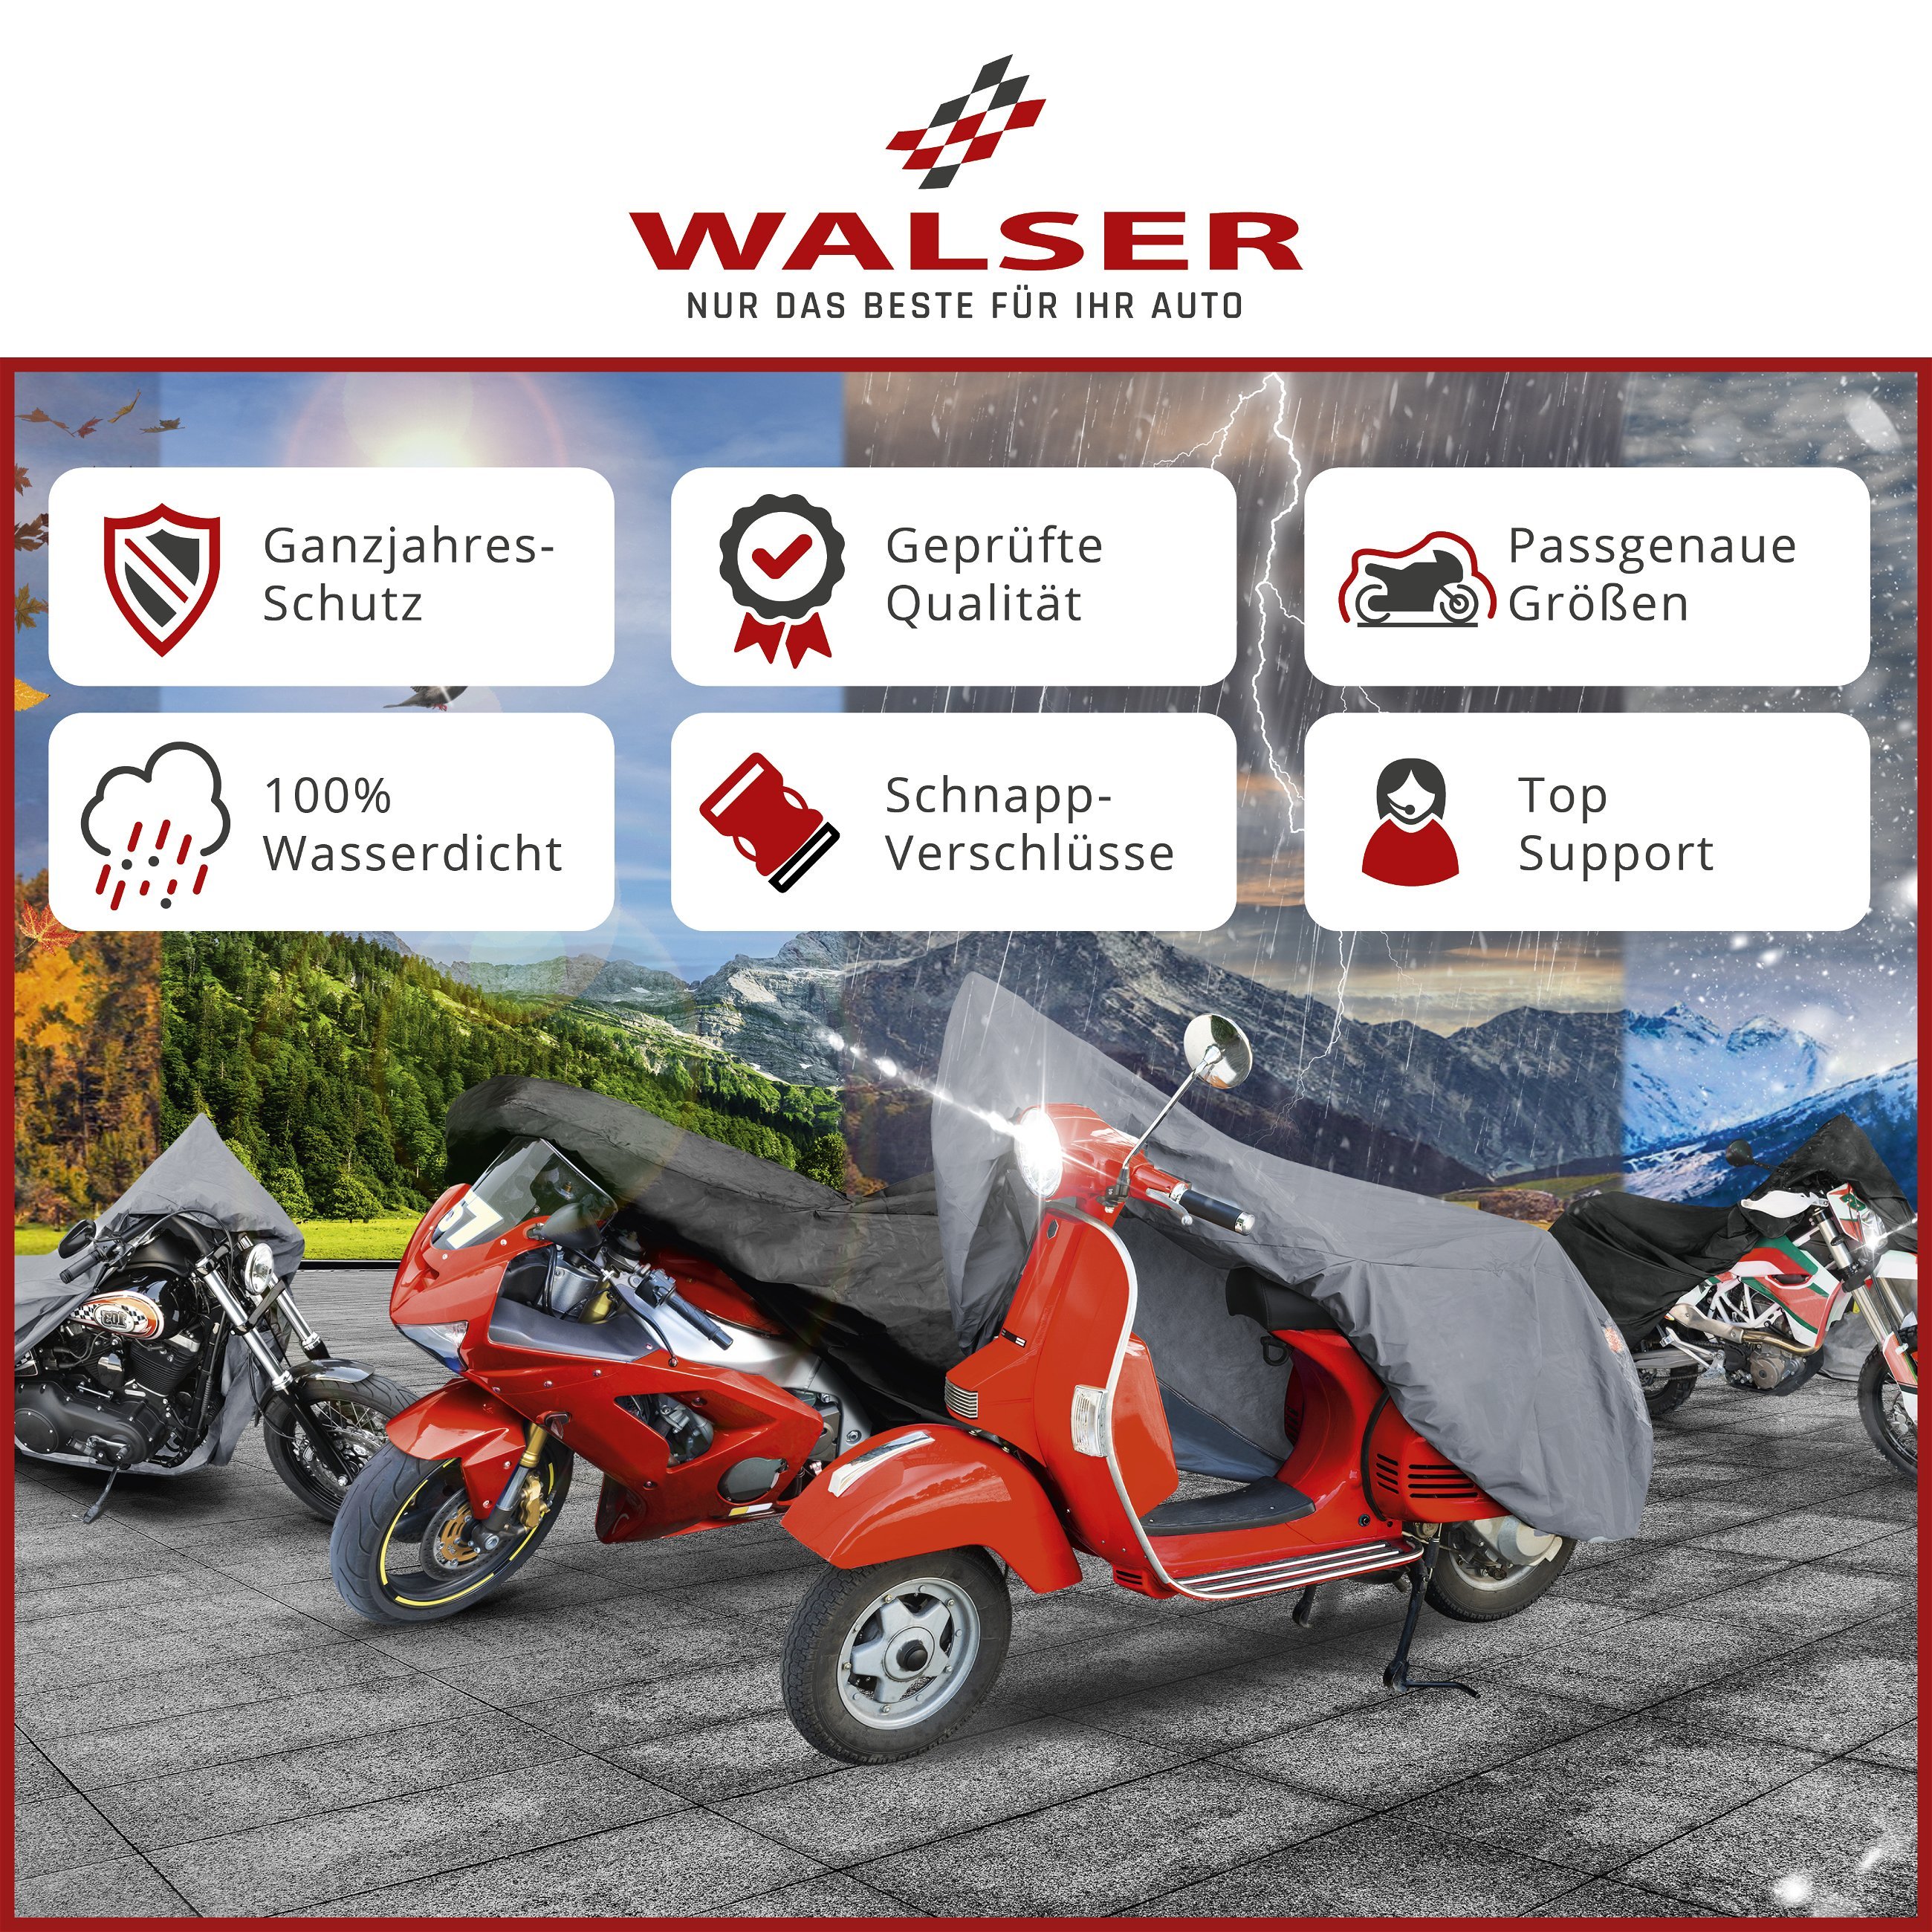 Roller-Nässeschutz, wasserdichter Regenschutz-Moped, Scooter